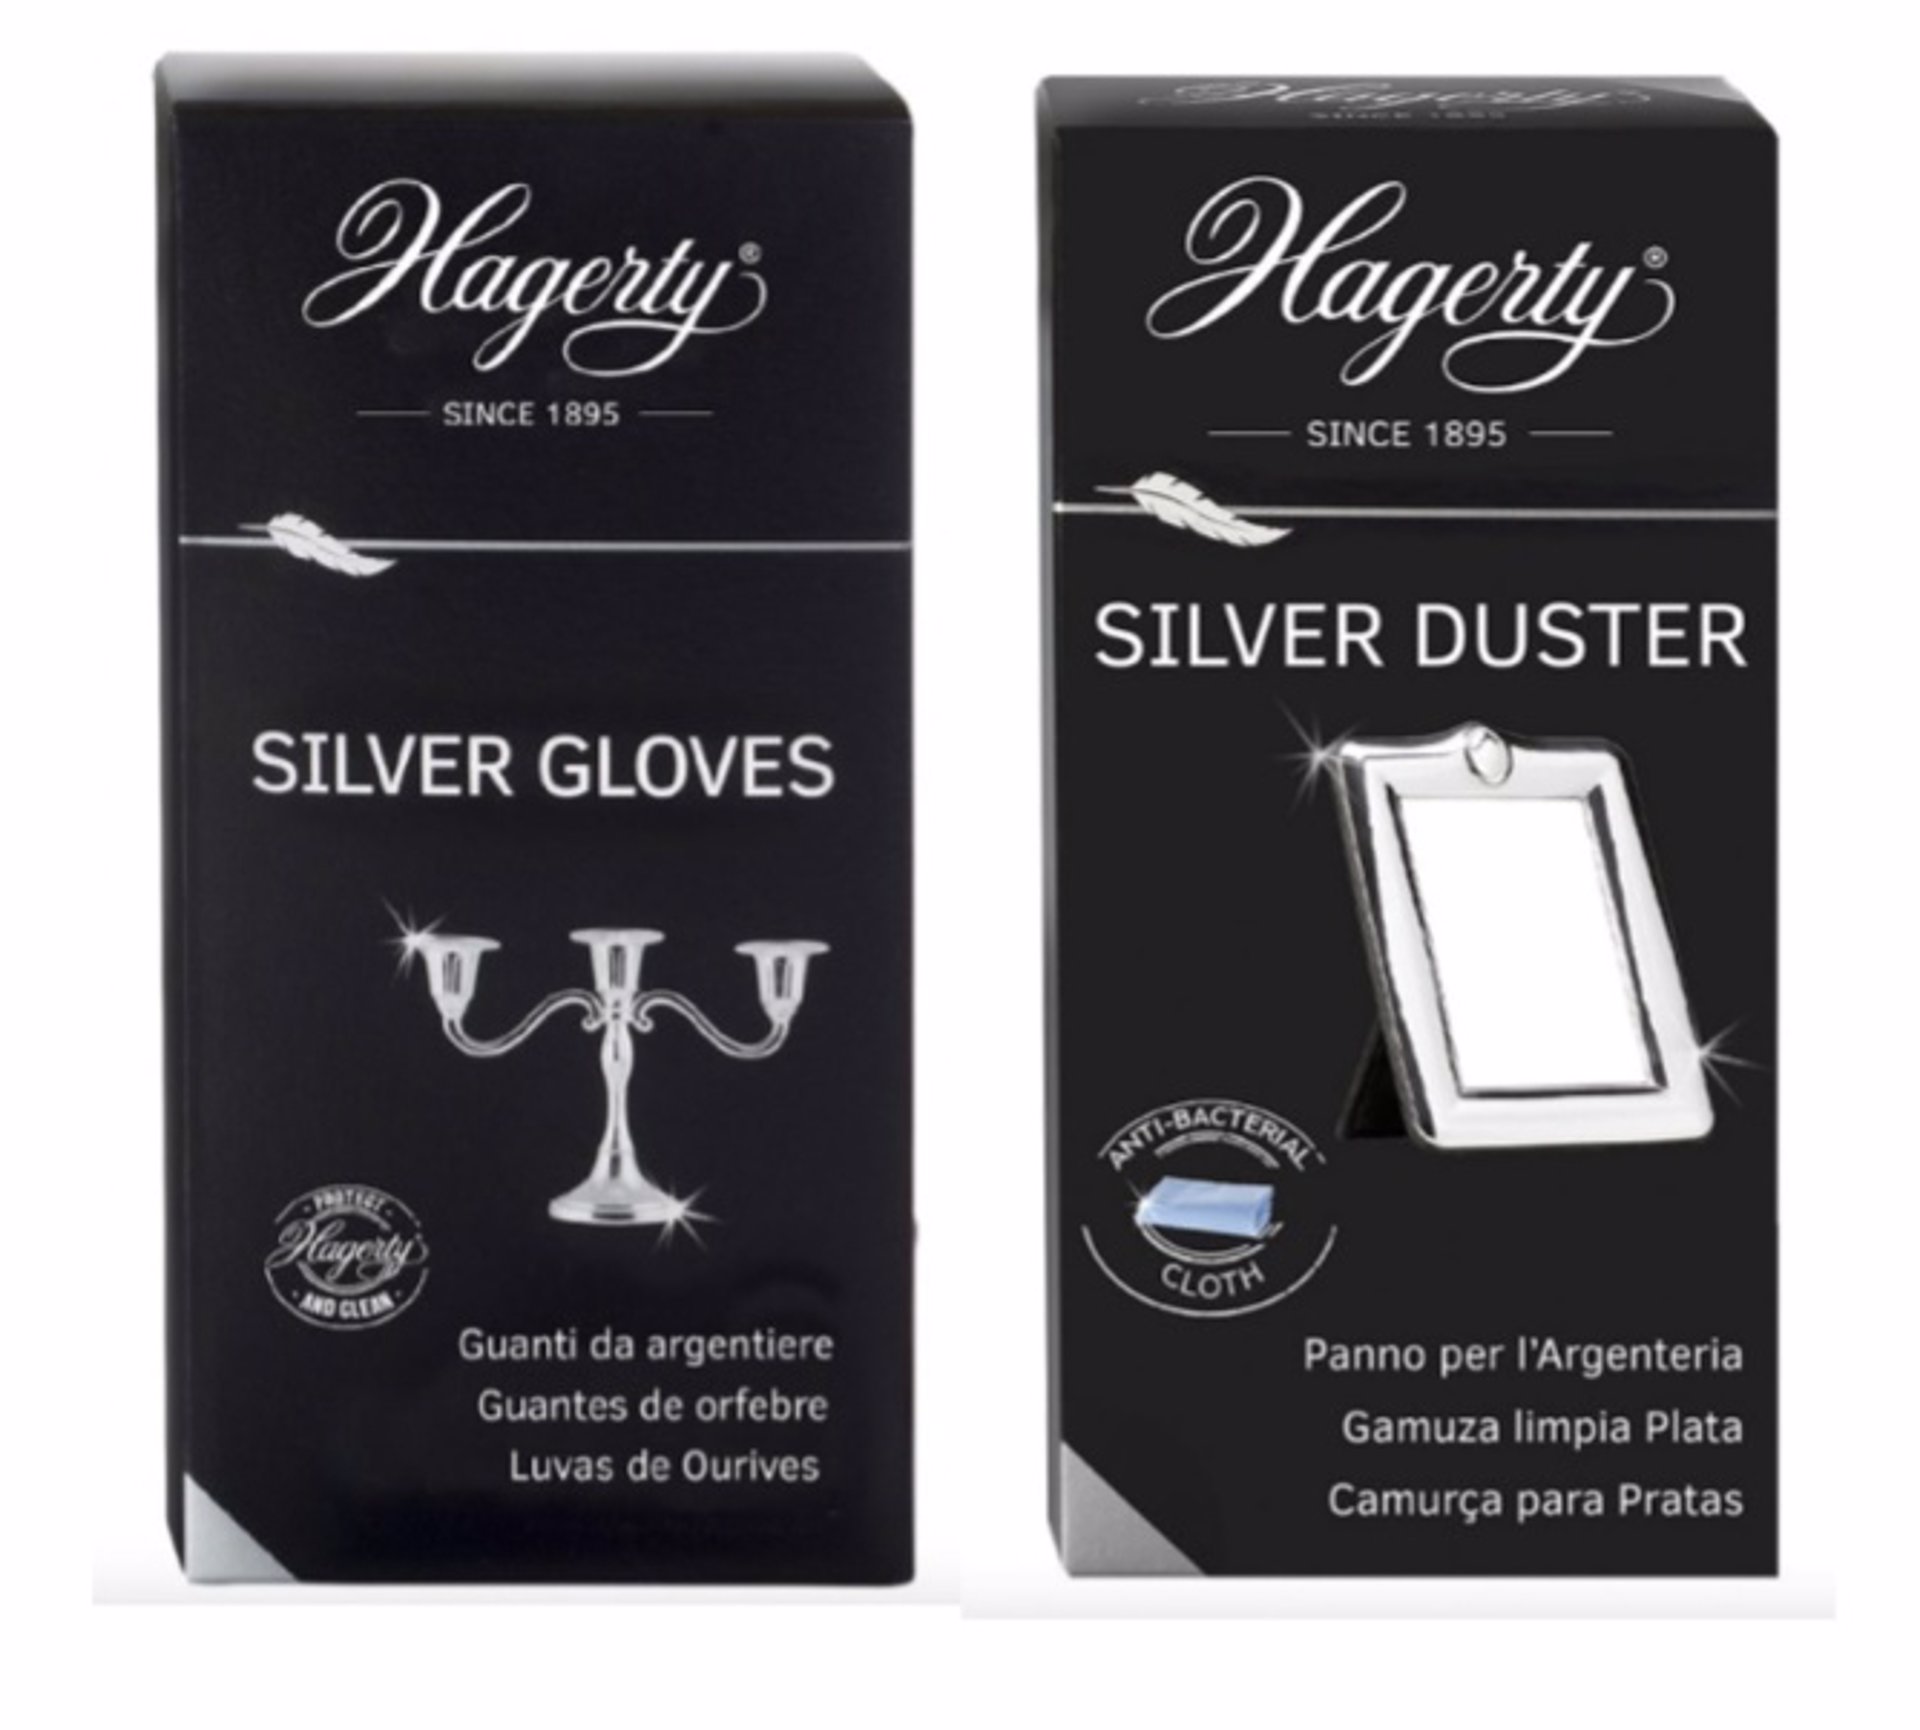 Silver Cloth: Gamuza impregnada para limpiar joyas de plata y